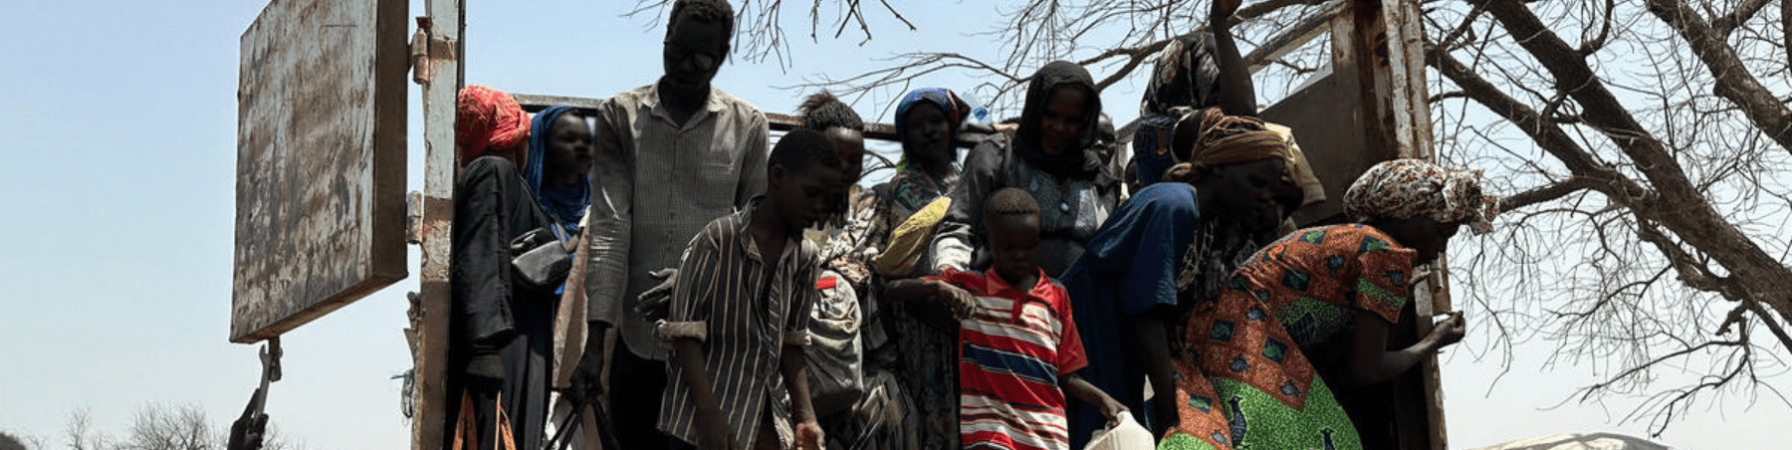 persone sfollate in sud sudan 